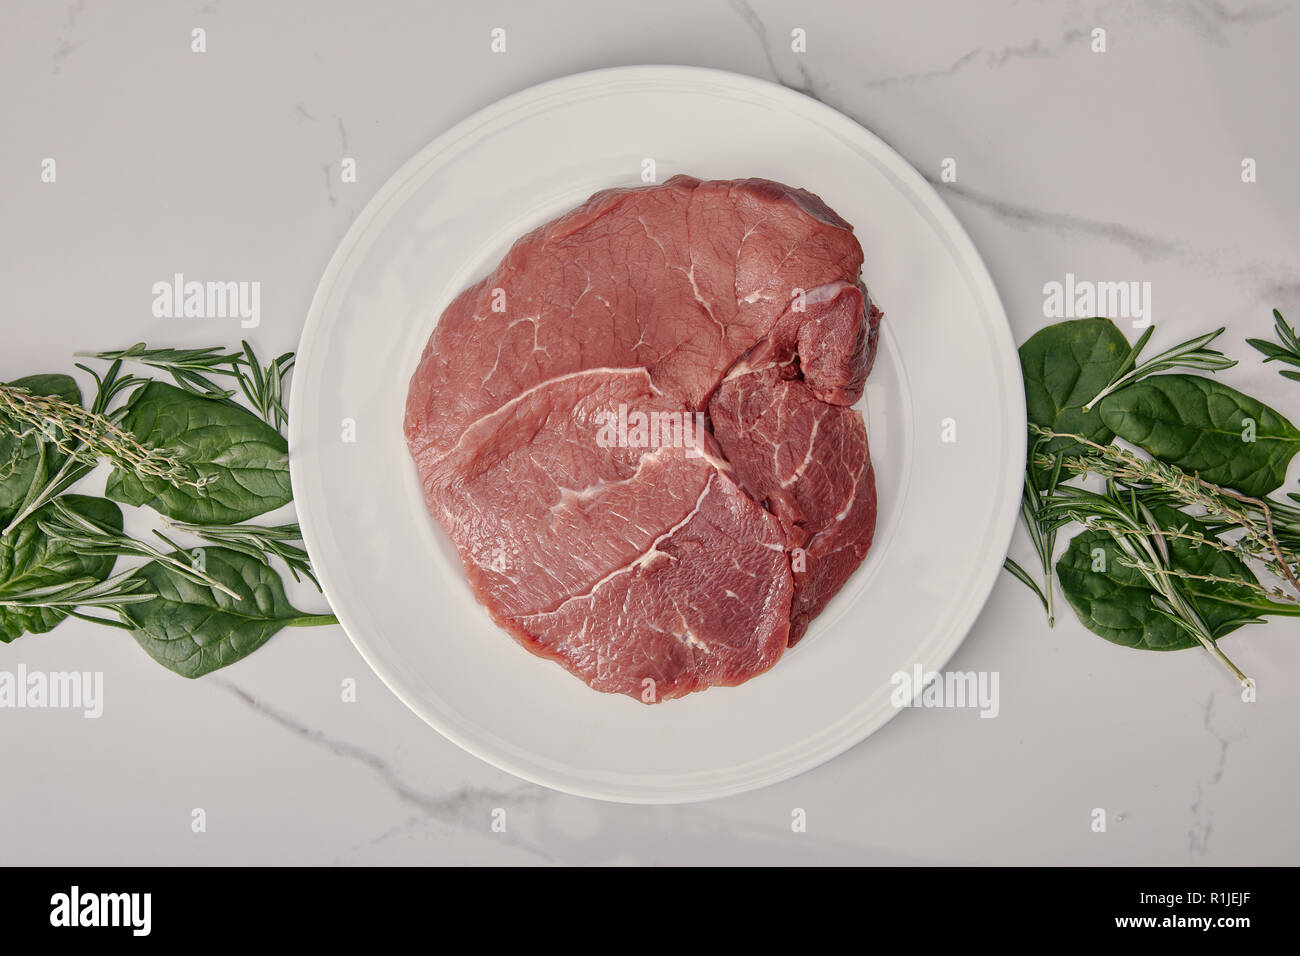 Vista dall'alto di carni la carne cruda sulla piastra con erbe su sfondo bianco Foto Stock